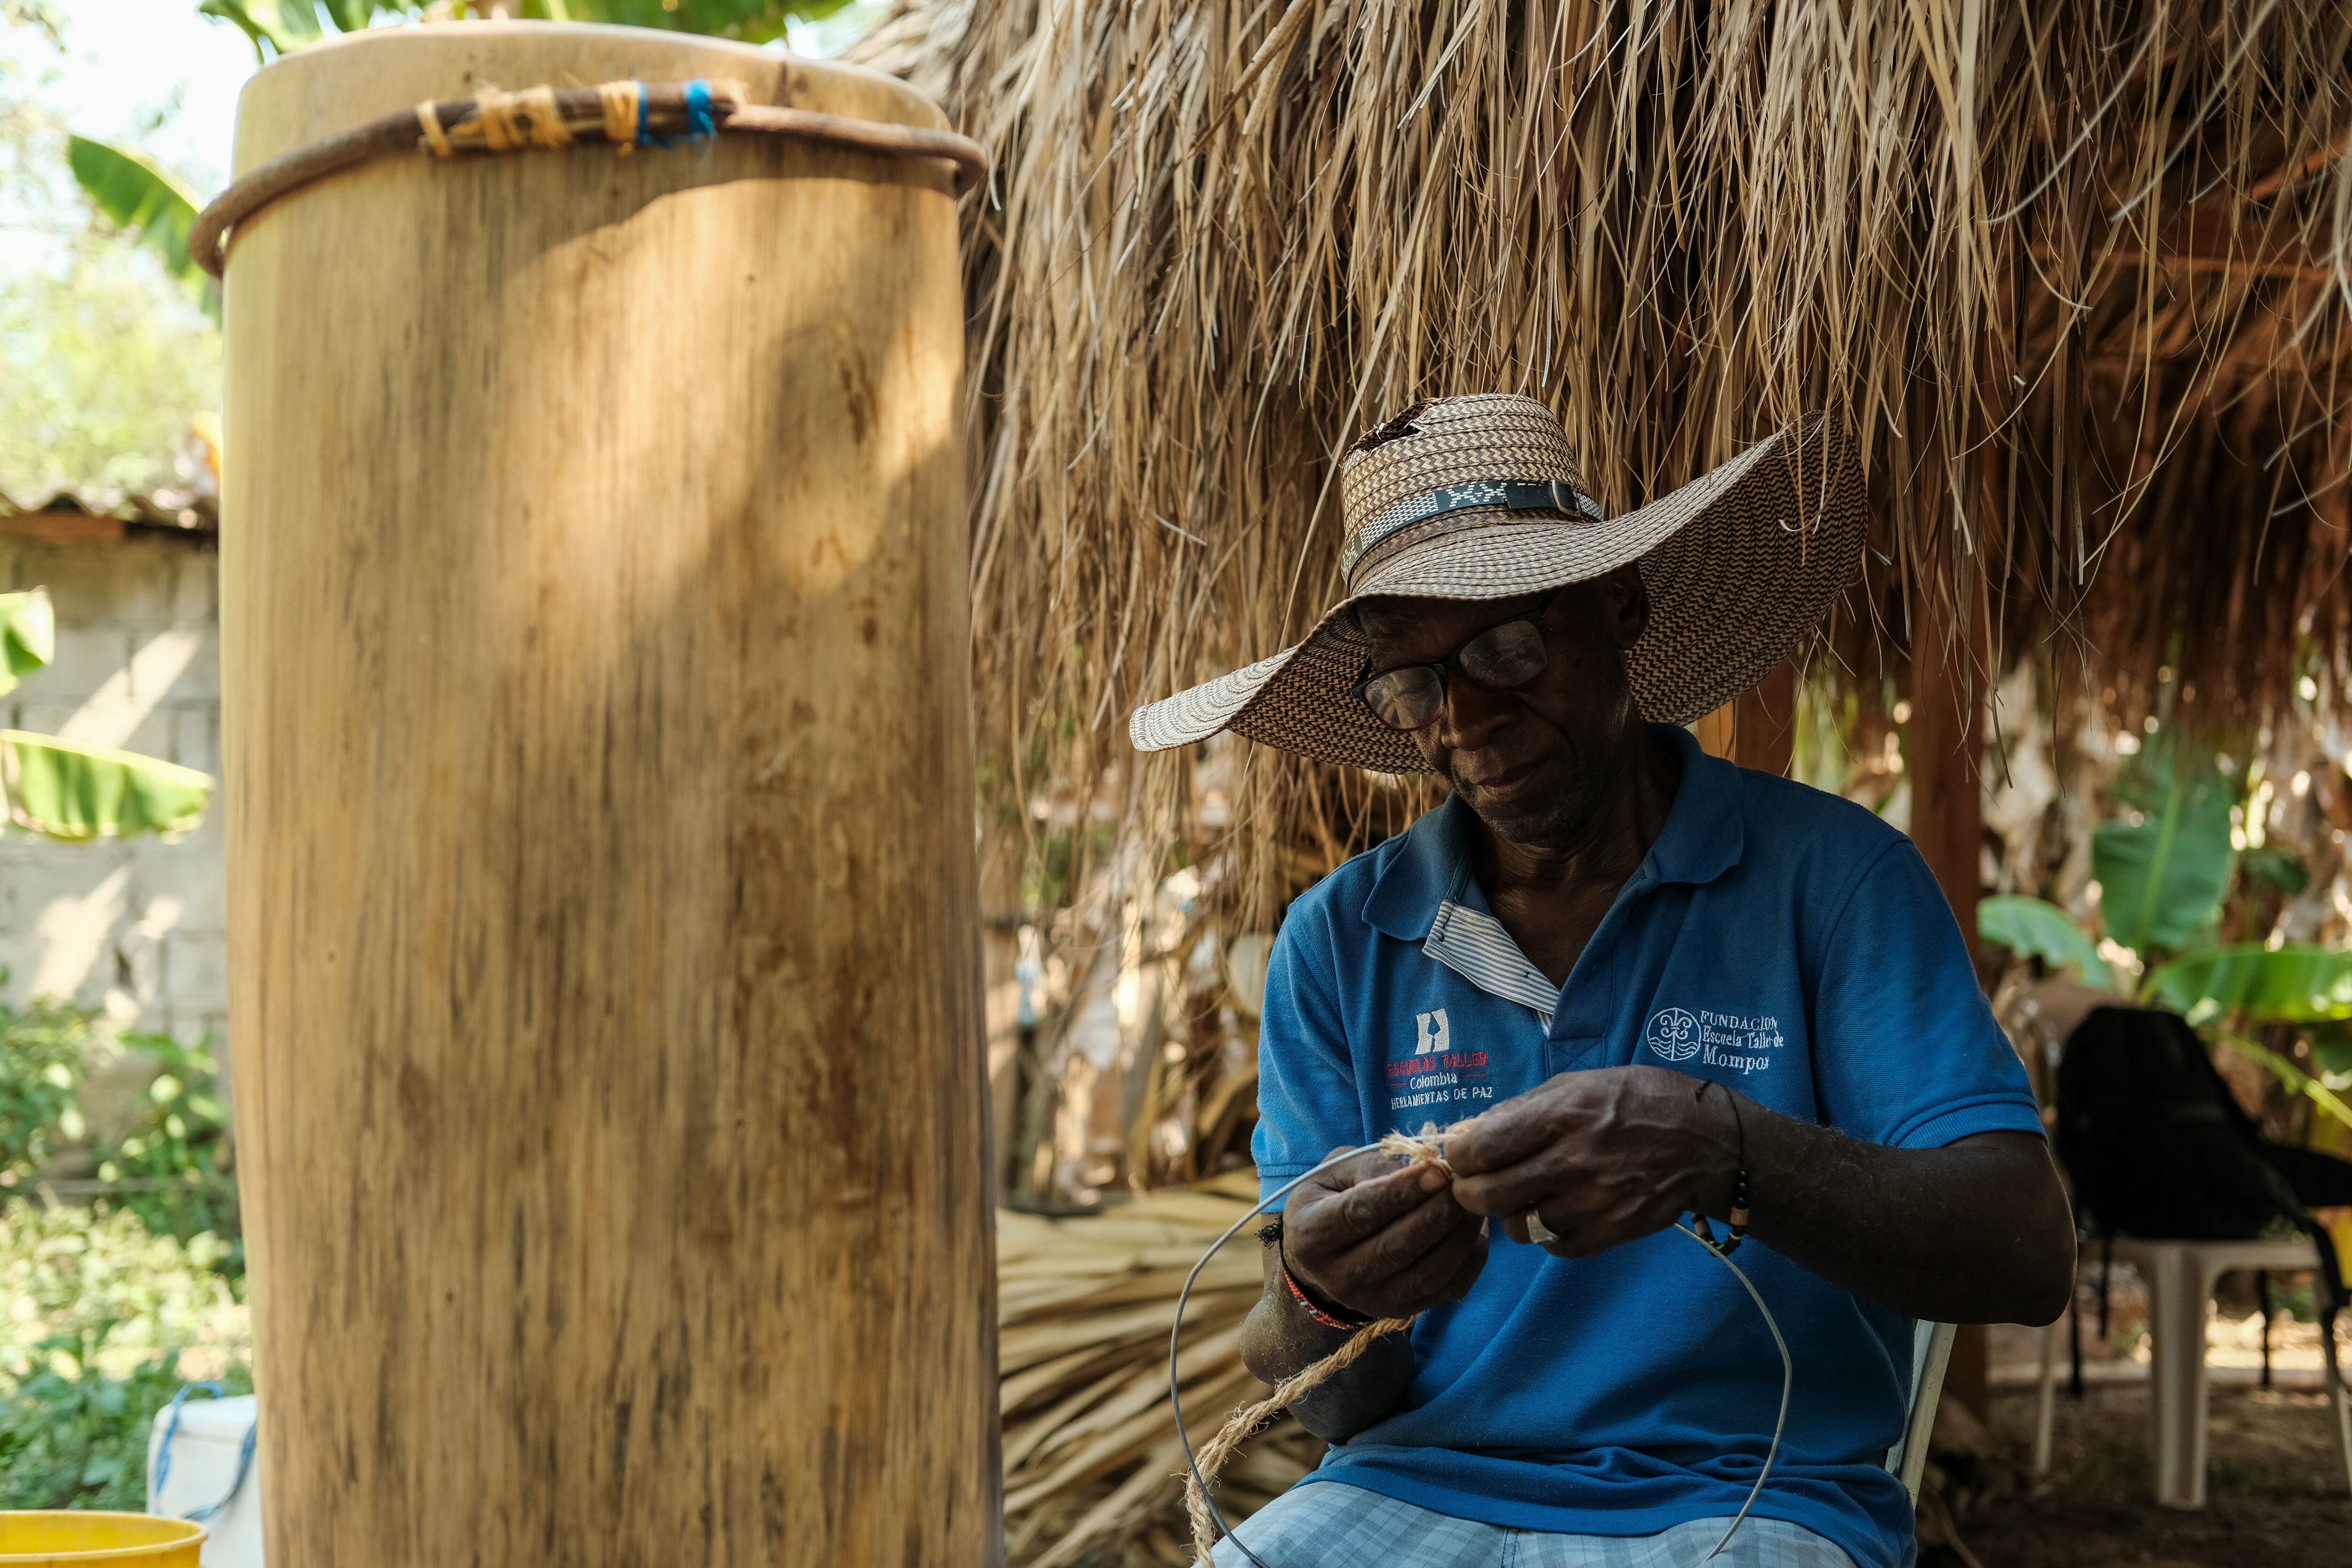 Un hombre construye aros de madera para dar soporte a piel y cuerdas del tambor.